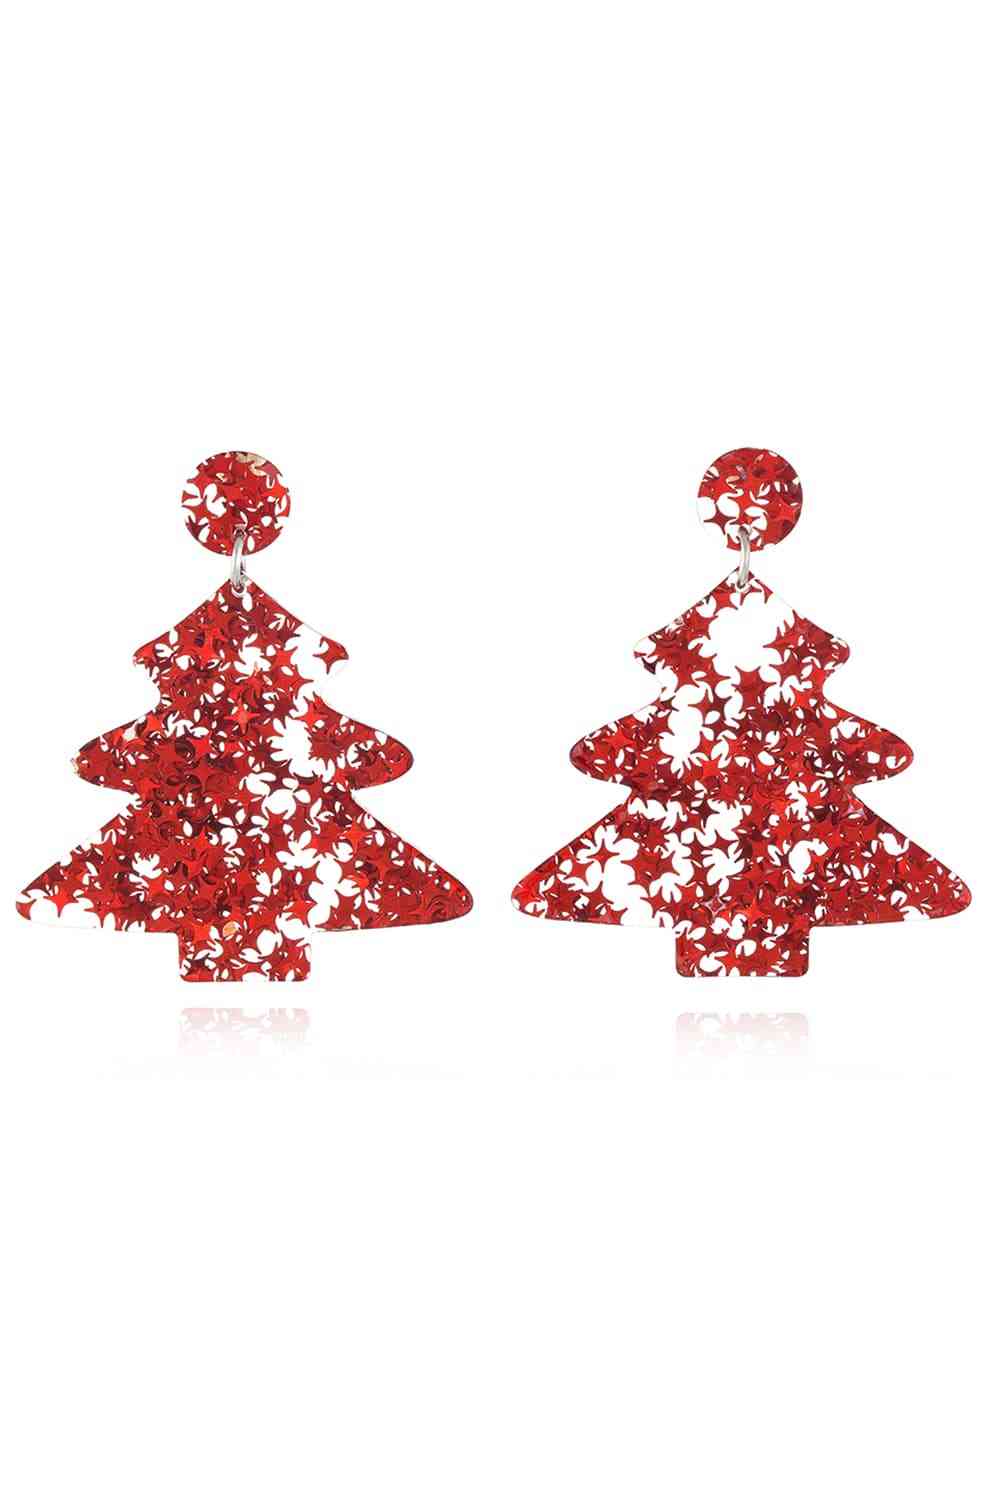 Christmas Tree Acrylic Earrings - Red/Style B / One Size - Women’s Jewelry - Earrings - 13 - 2024